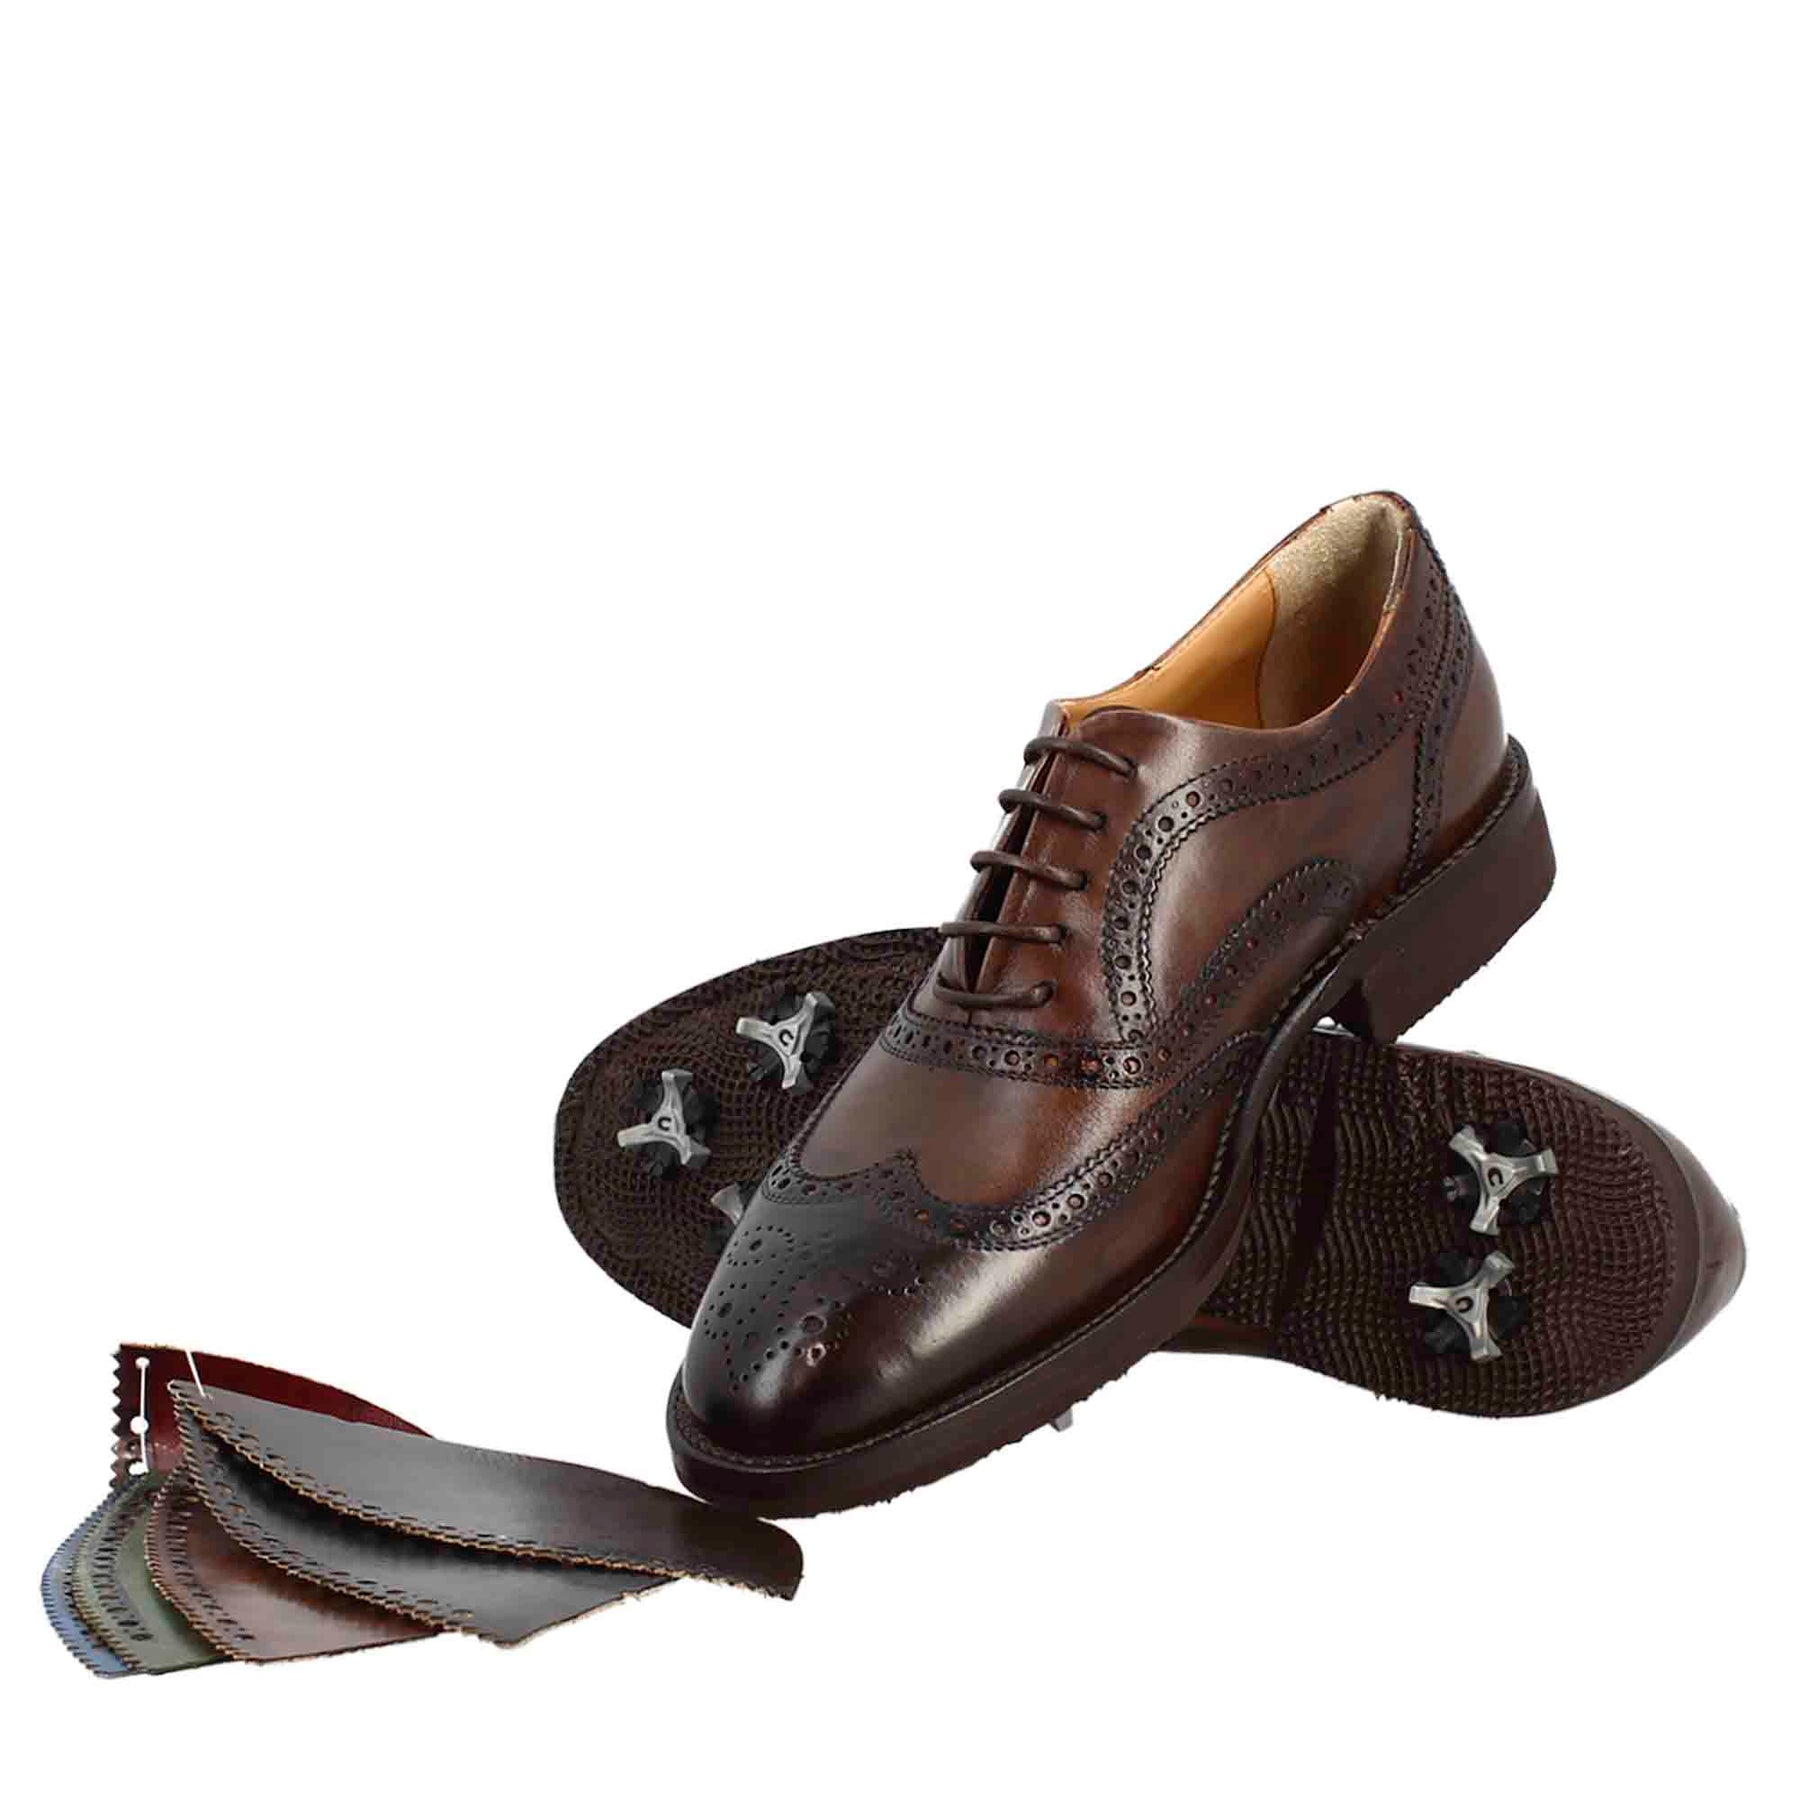 Chaussures de golf pour femmes en cuir marron avec des détails de brogue faits à la main